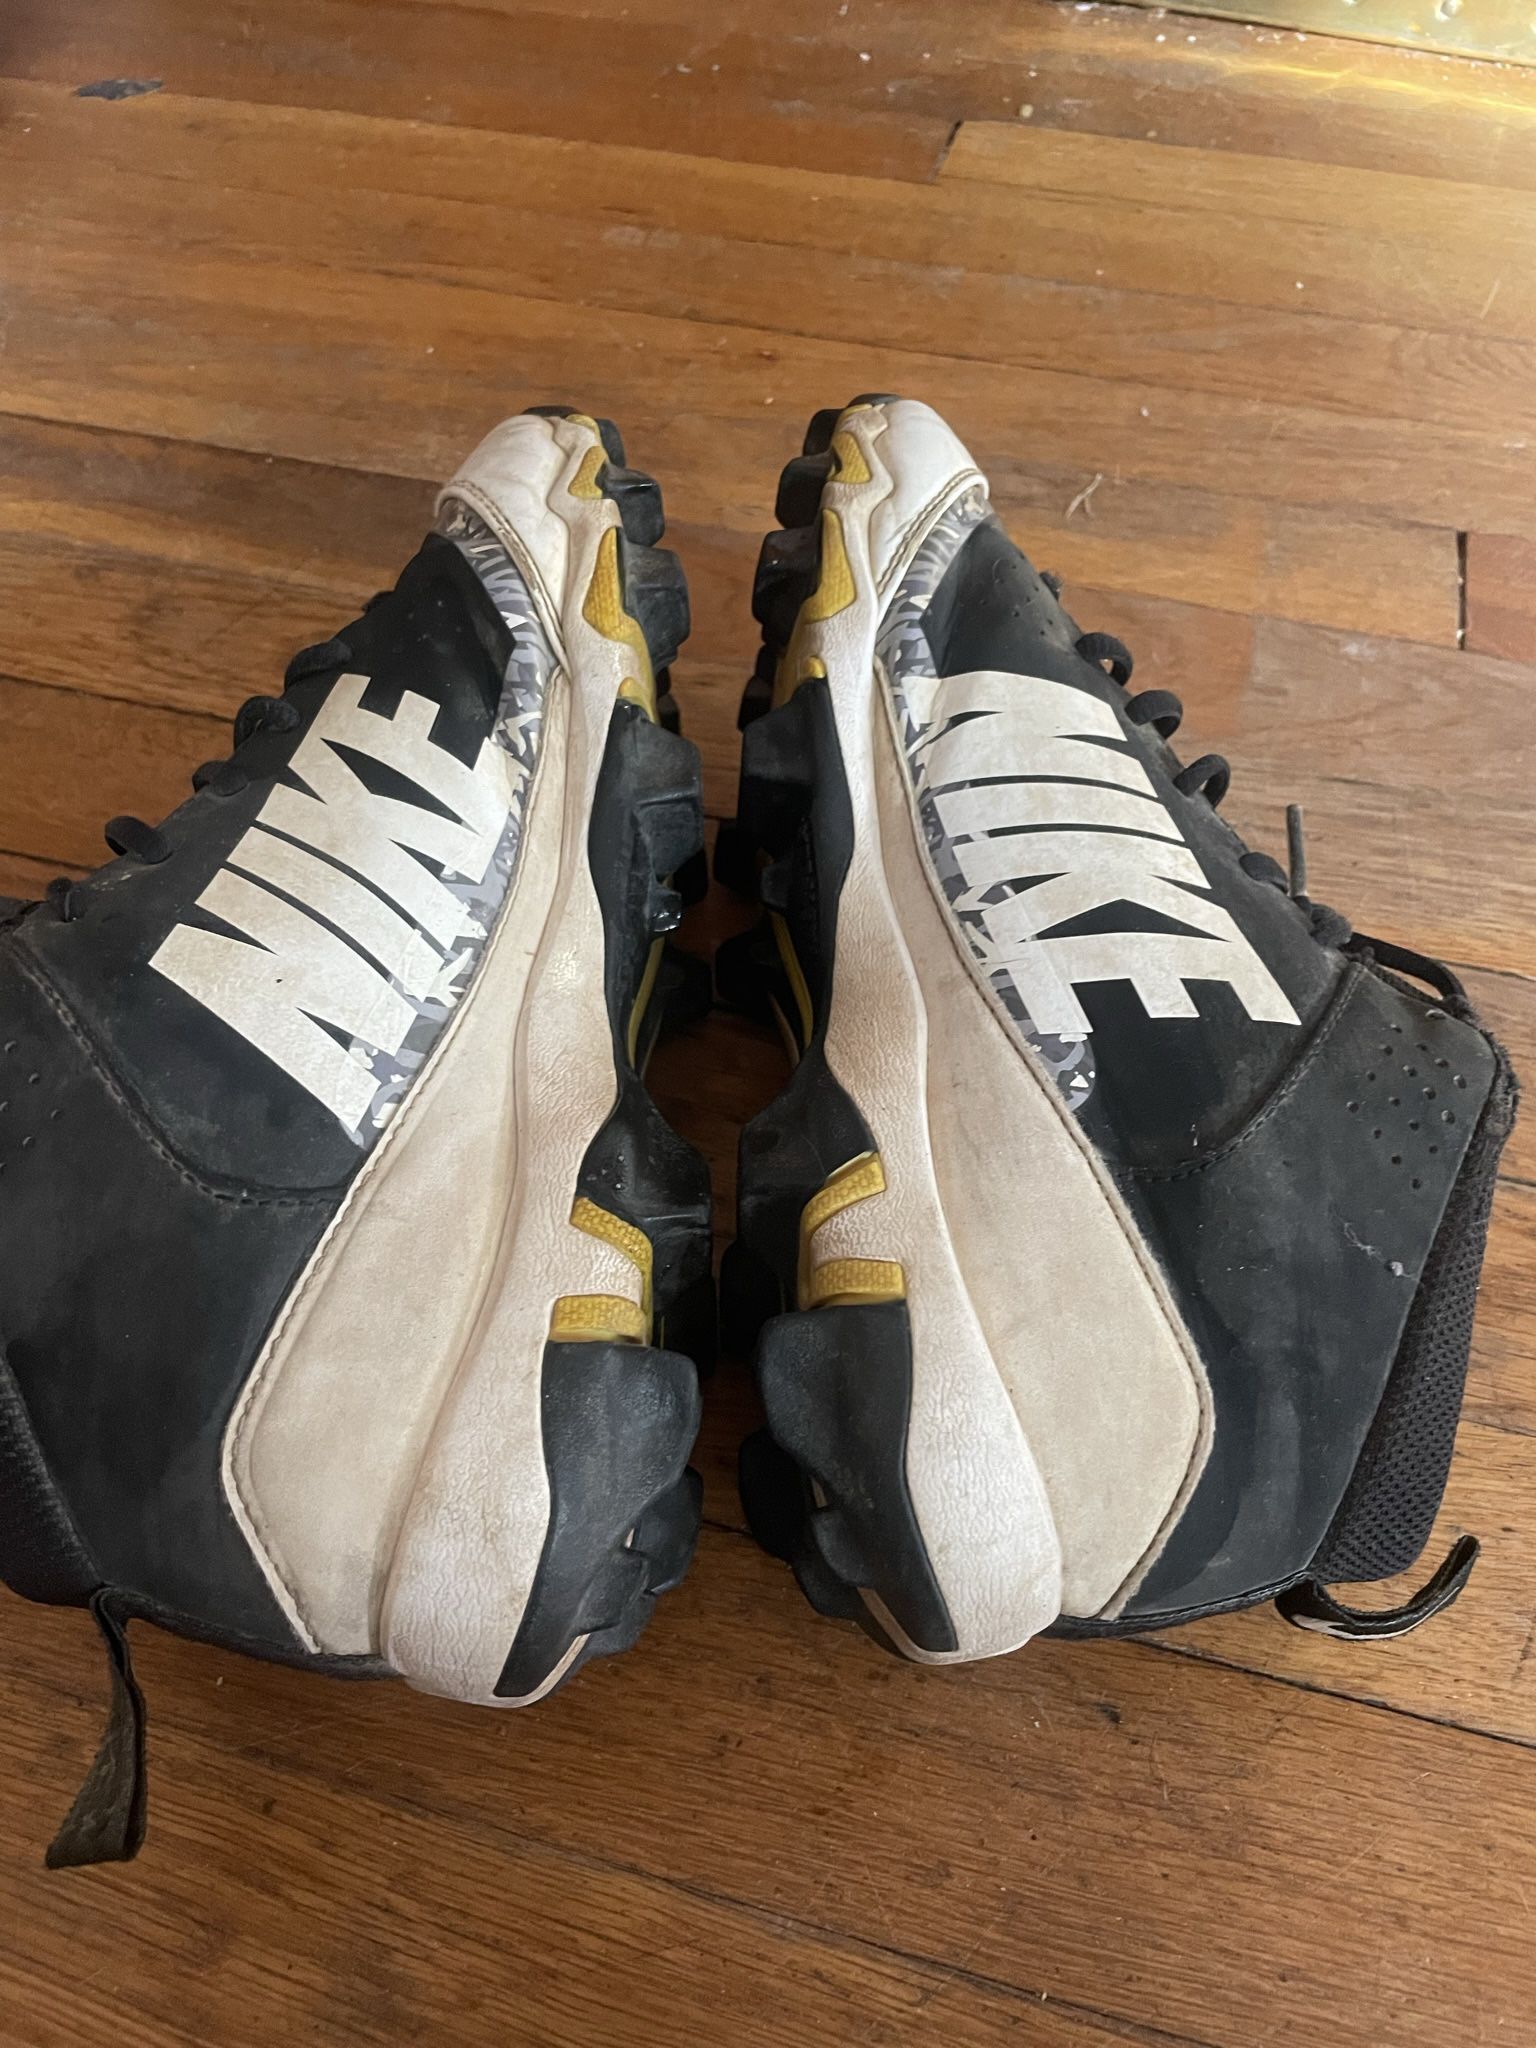 Nike Baseball Cleats Plastic And metal . Easton Baseball Bats